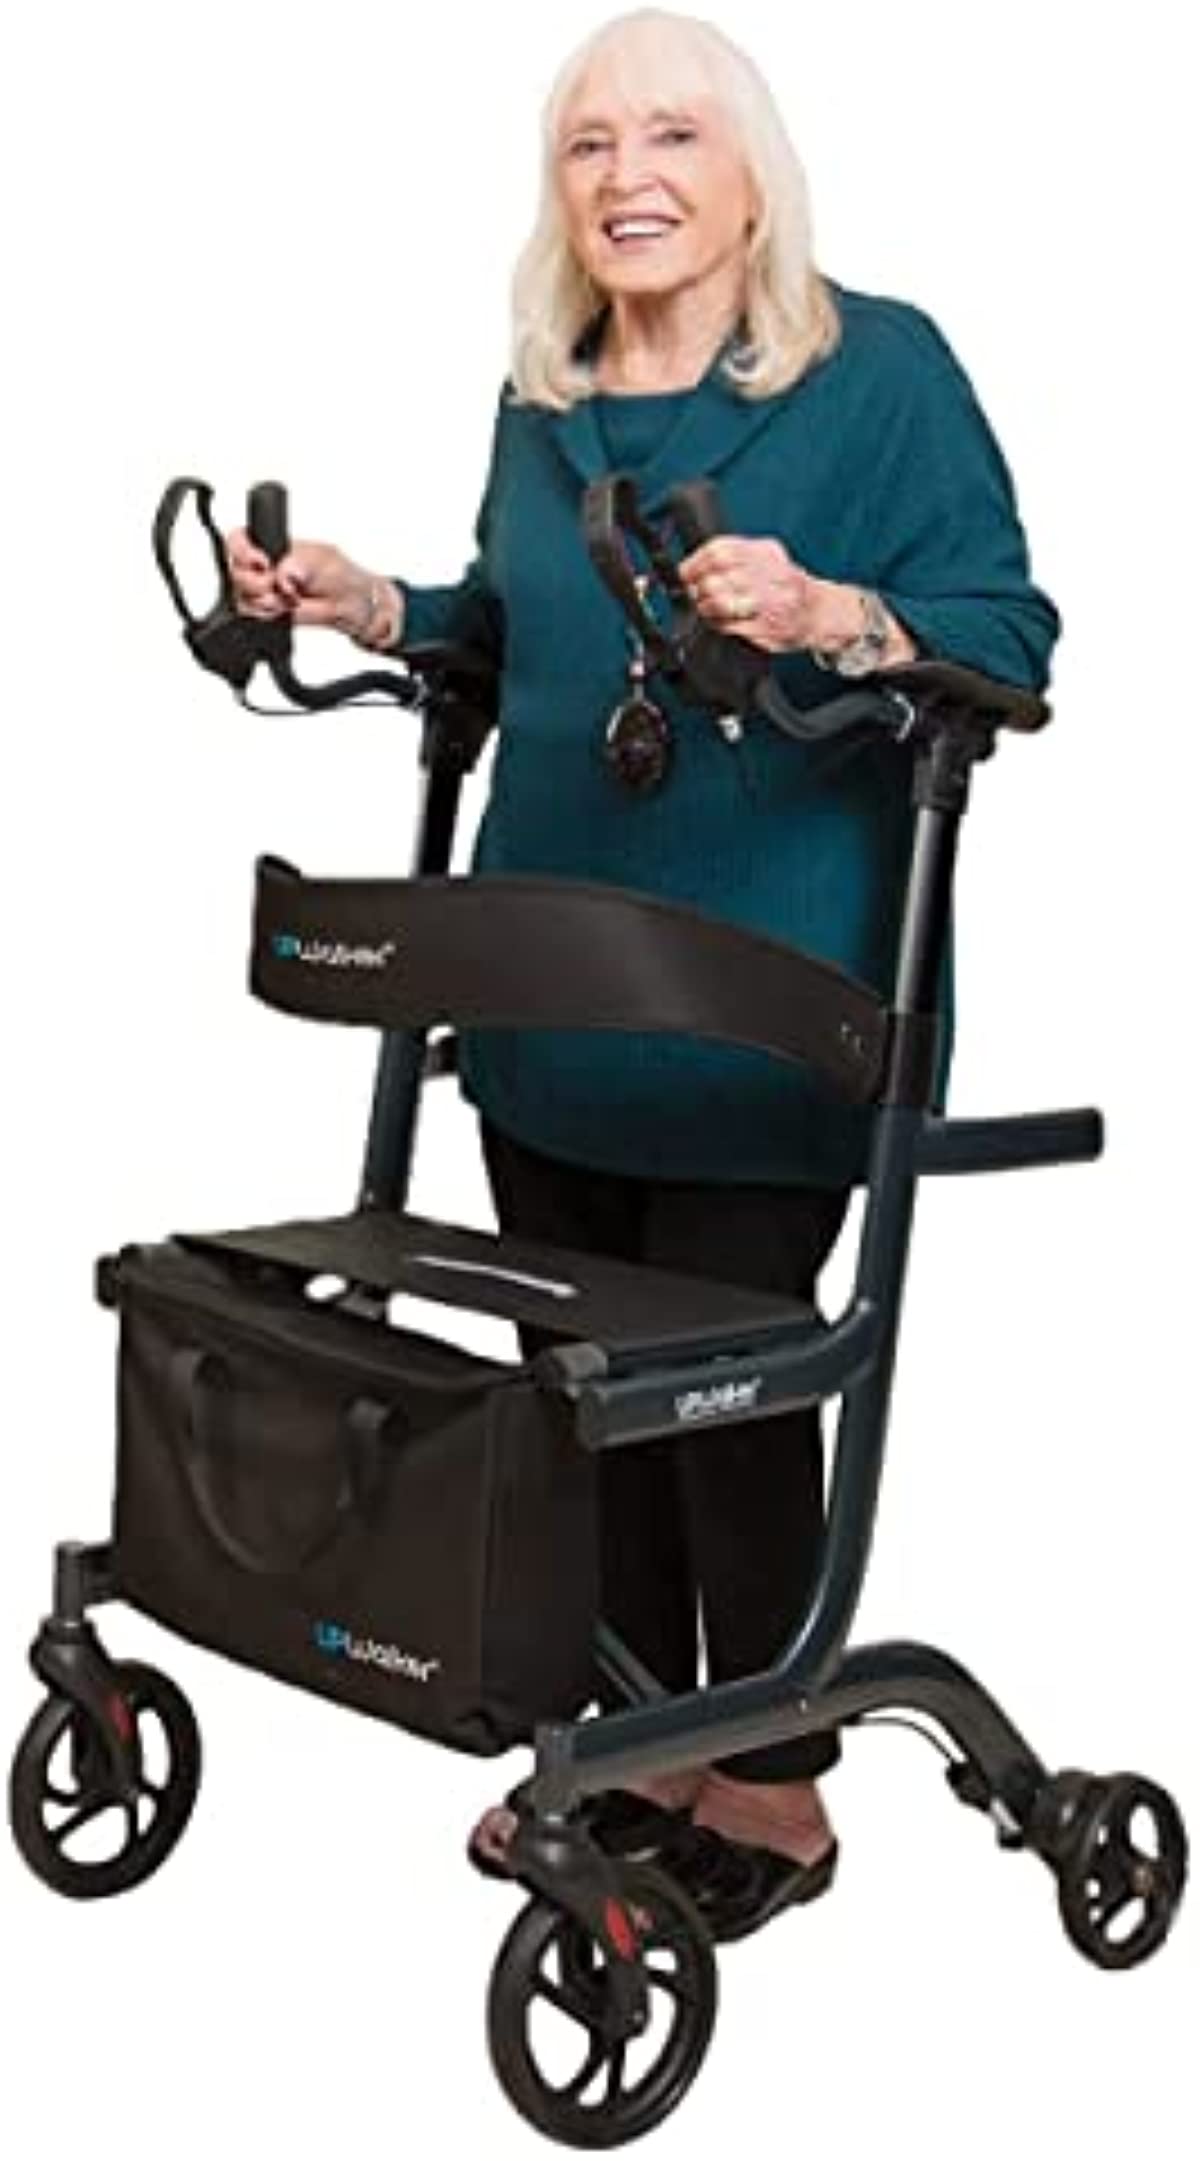 UPWalker Lite The Original Upright Walker – Fully Assembled ISO Certified Adjustable Stand-Up Rollator Walker with Seat, Armrest, Backrest for Seniors